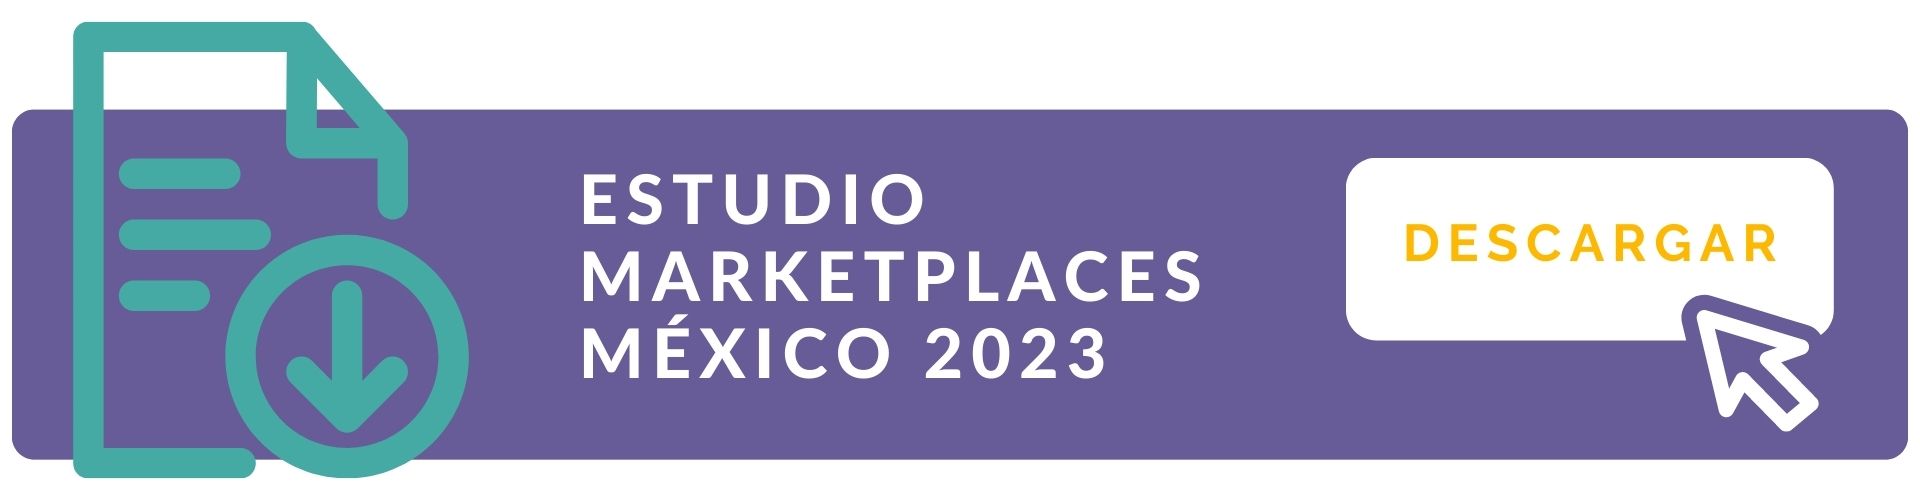 Descarga Estudio Marketplaces México 2023 by Tandem Up